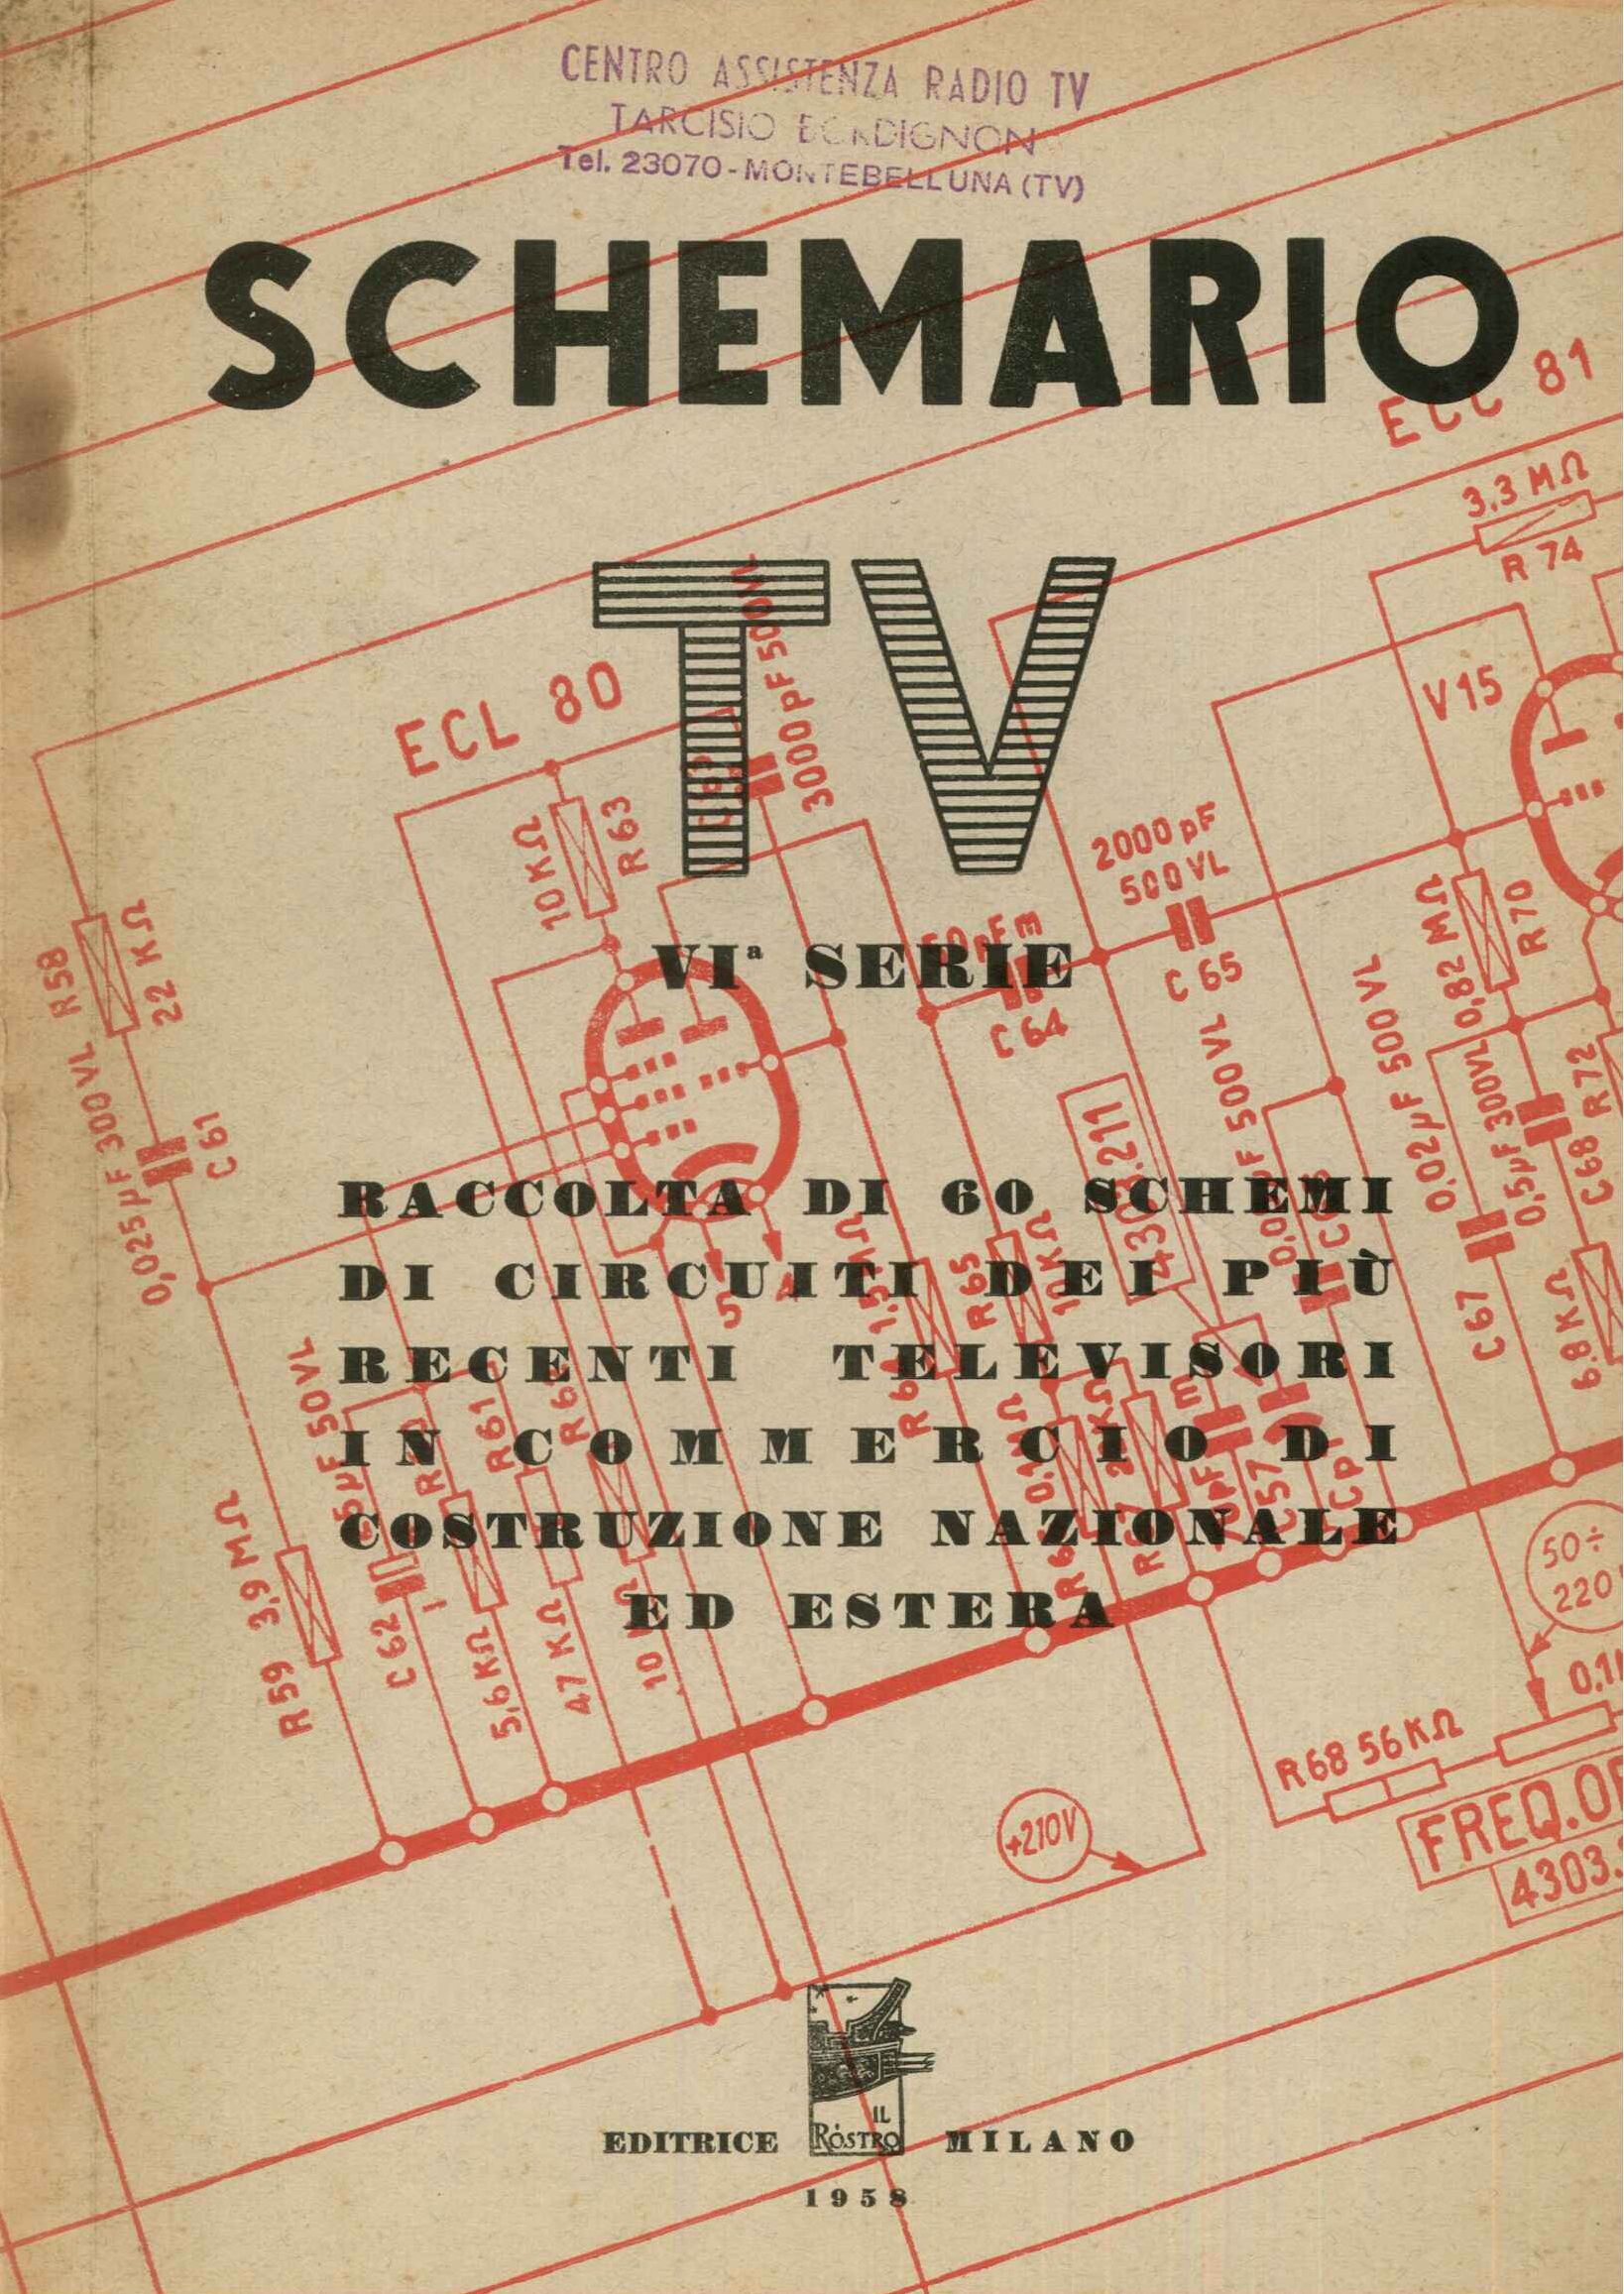 Schemario TV VI serie 1958